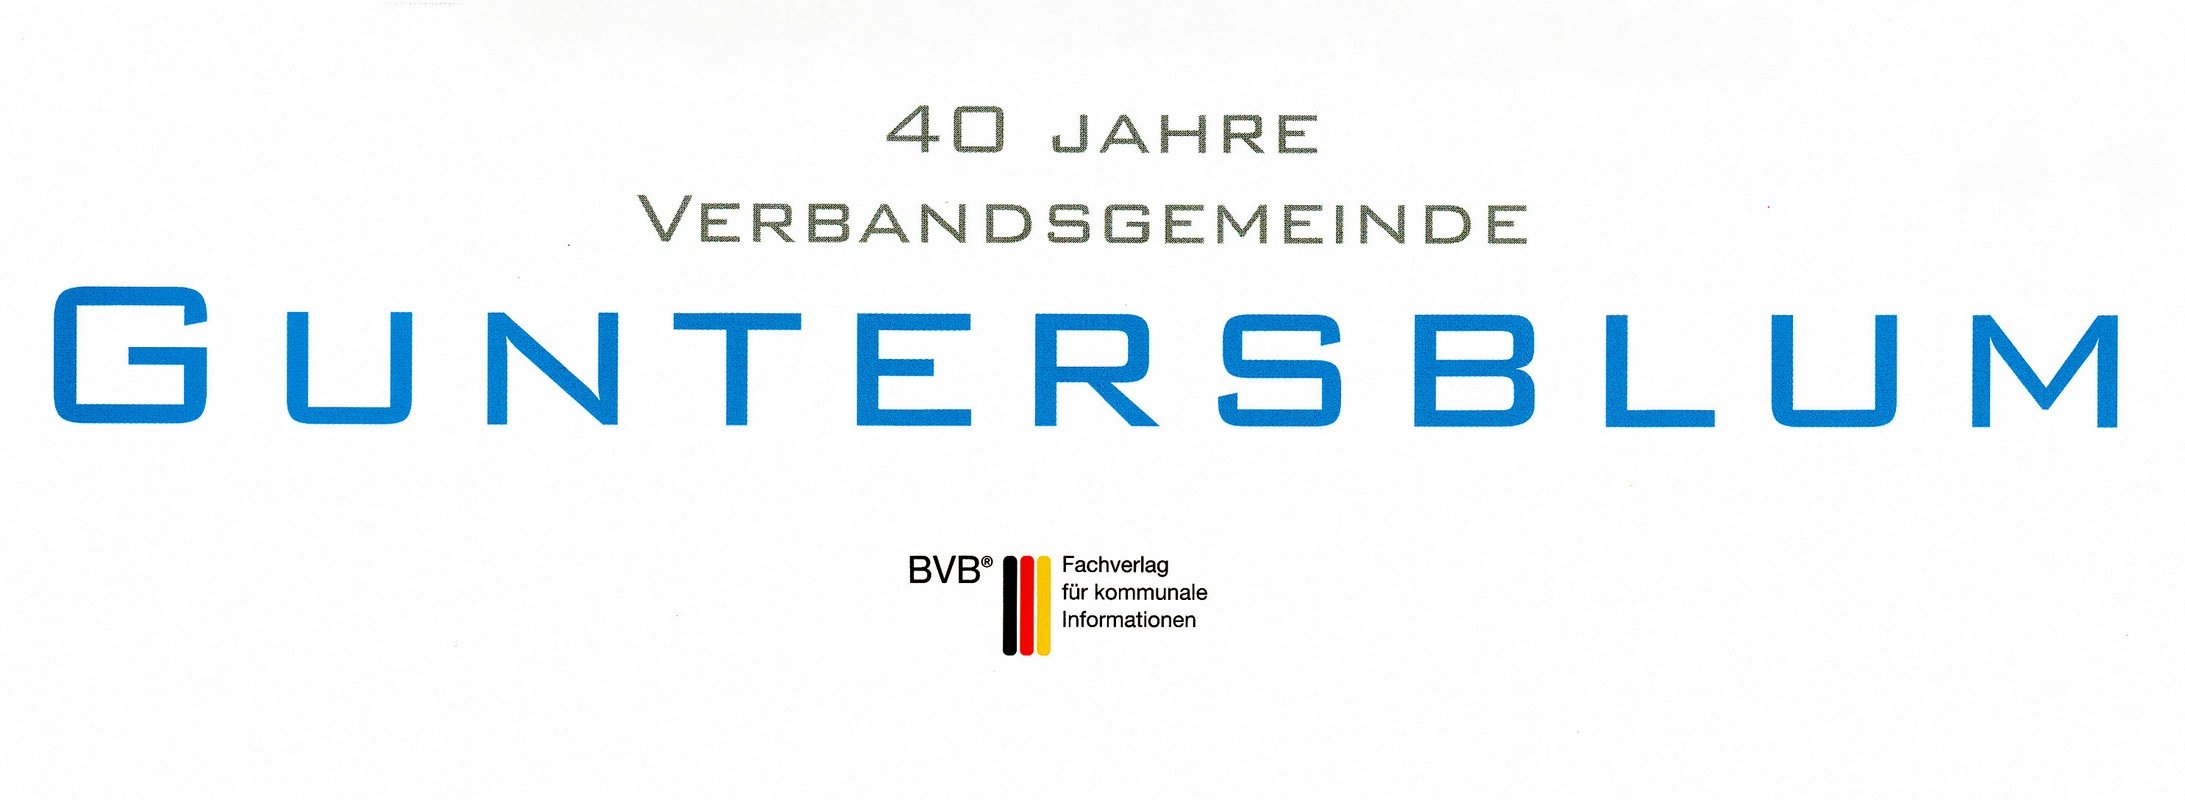 40 Jahre Verbandsgemeinde Guntersblum (Kulturverein Guntersblum CC BY-NC-SA)